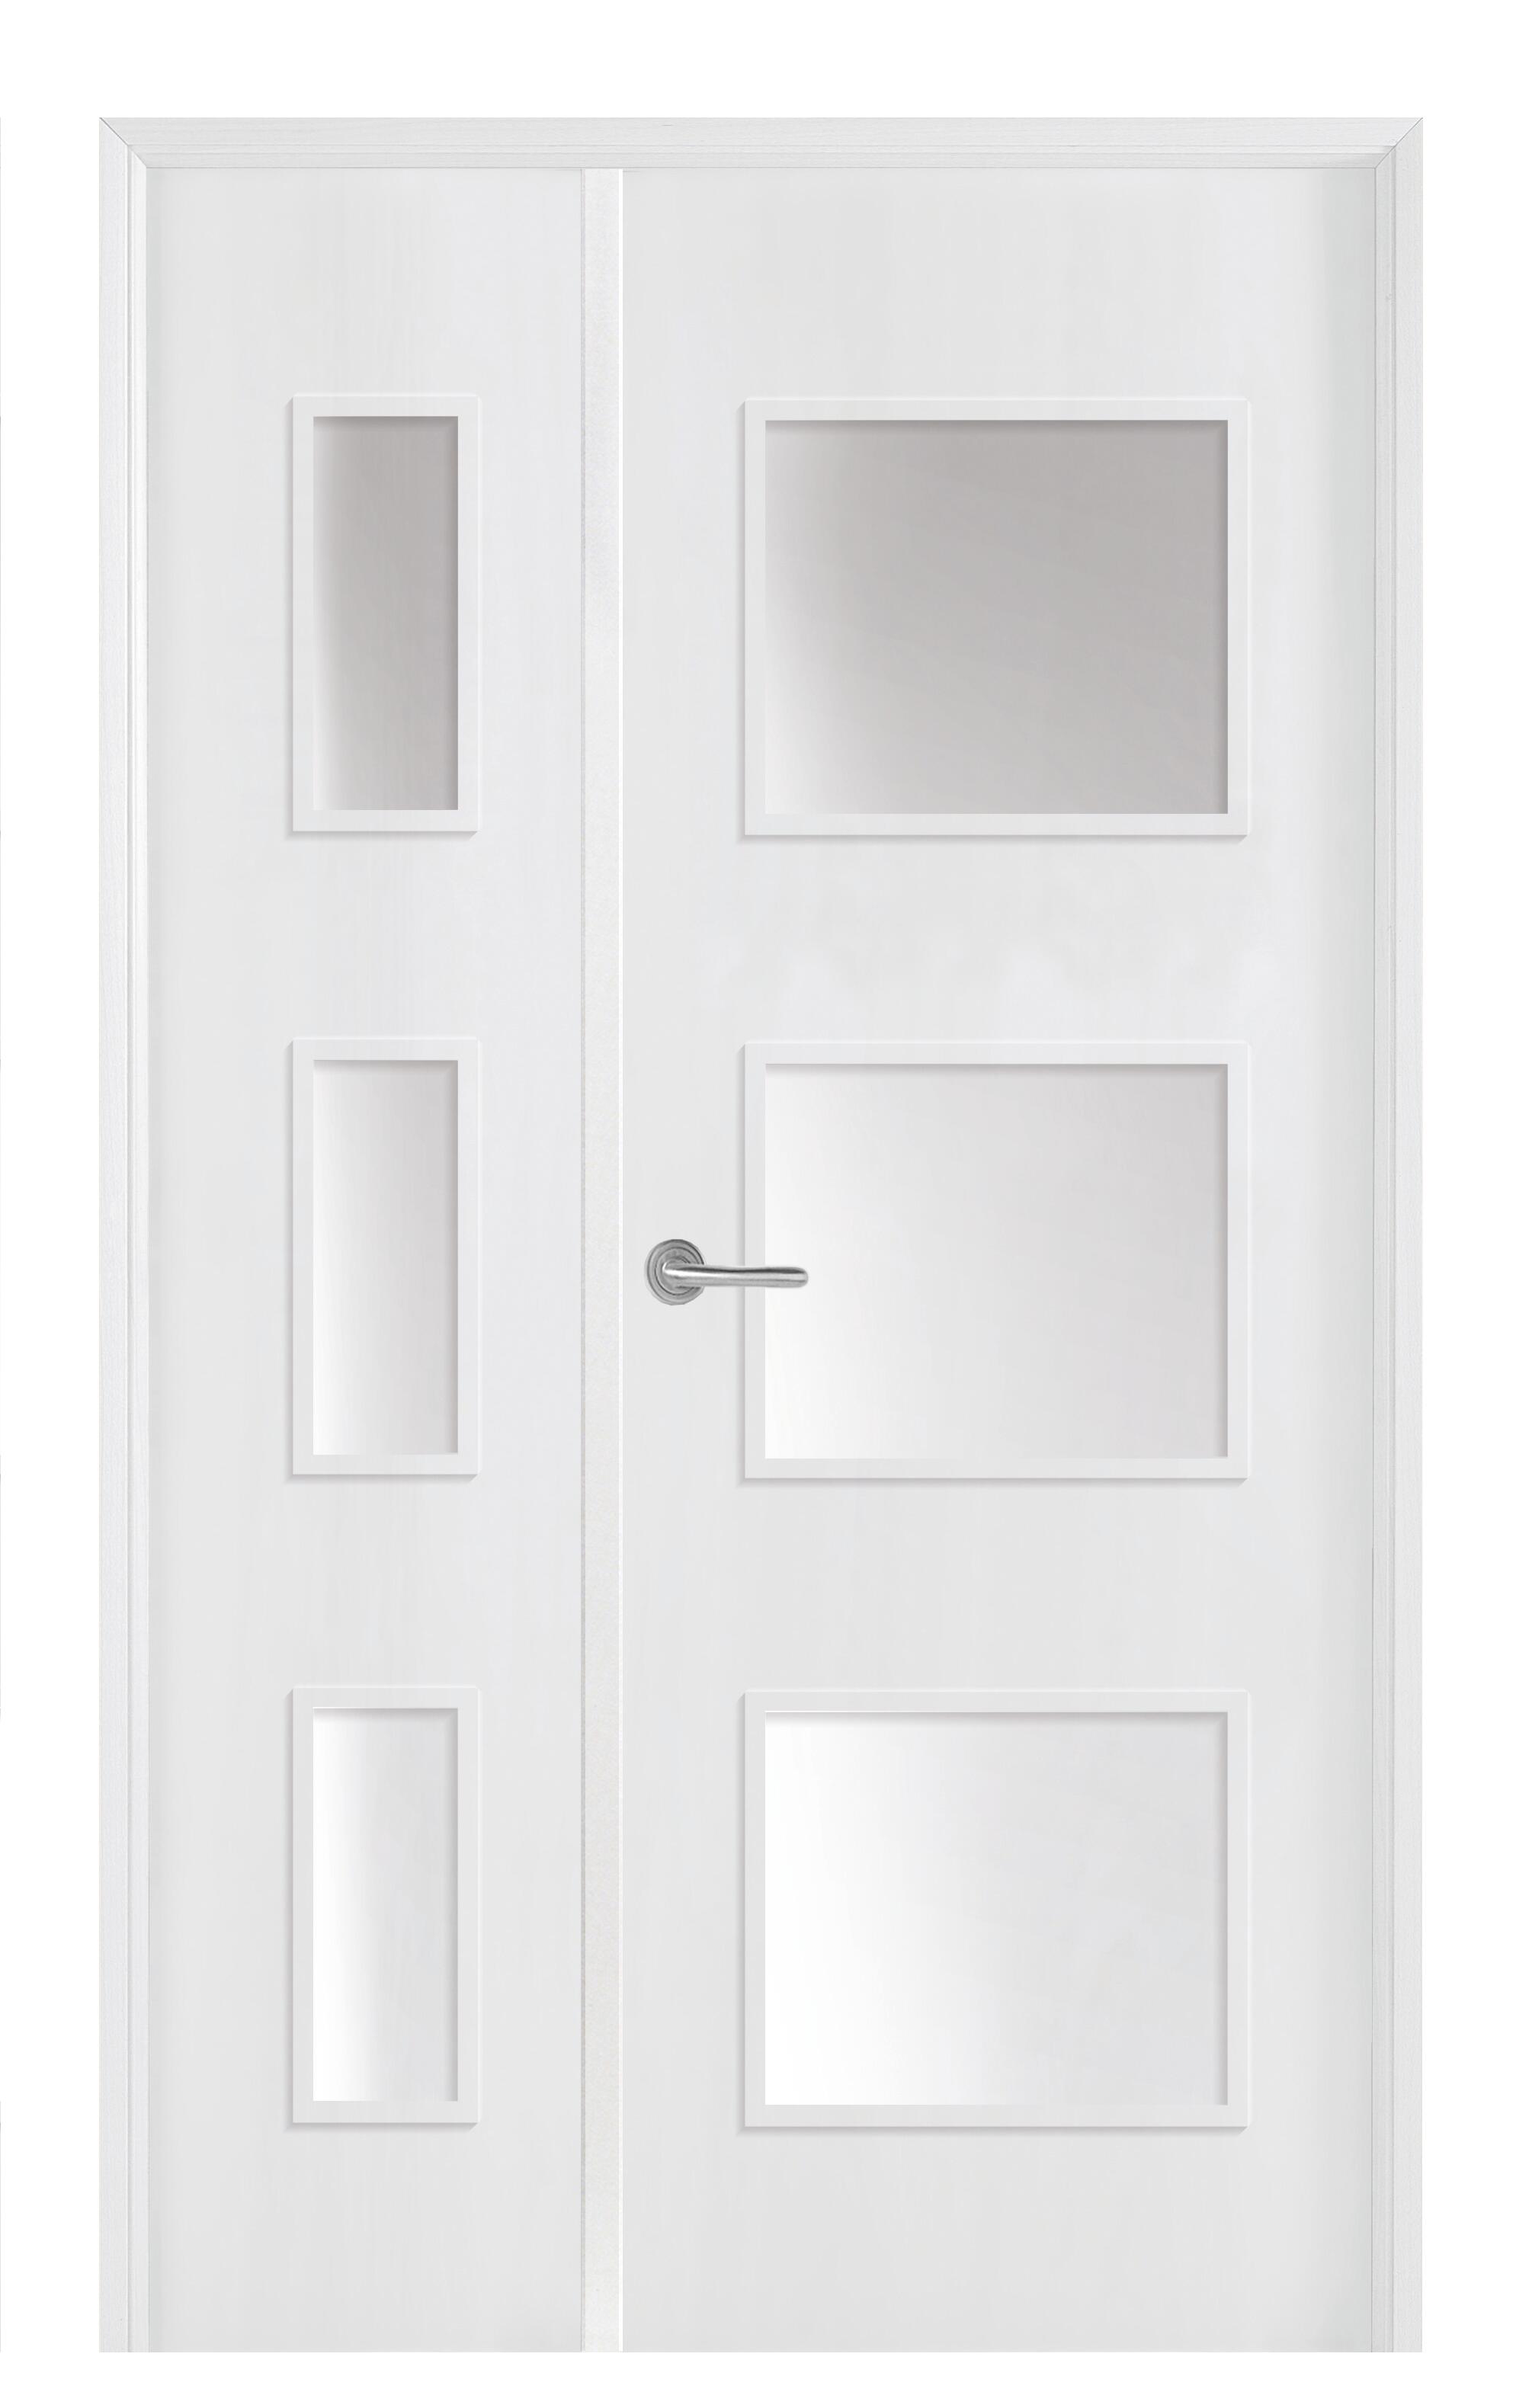 Puerta doble con cristal bari plus blanca 9x115cm (72+42) i